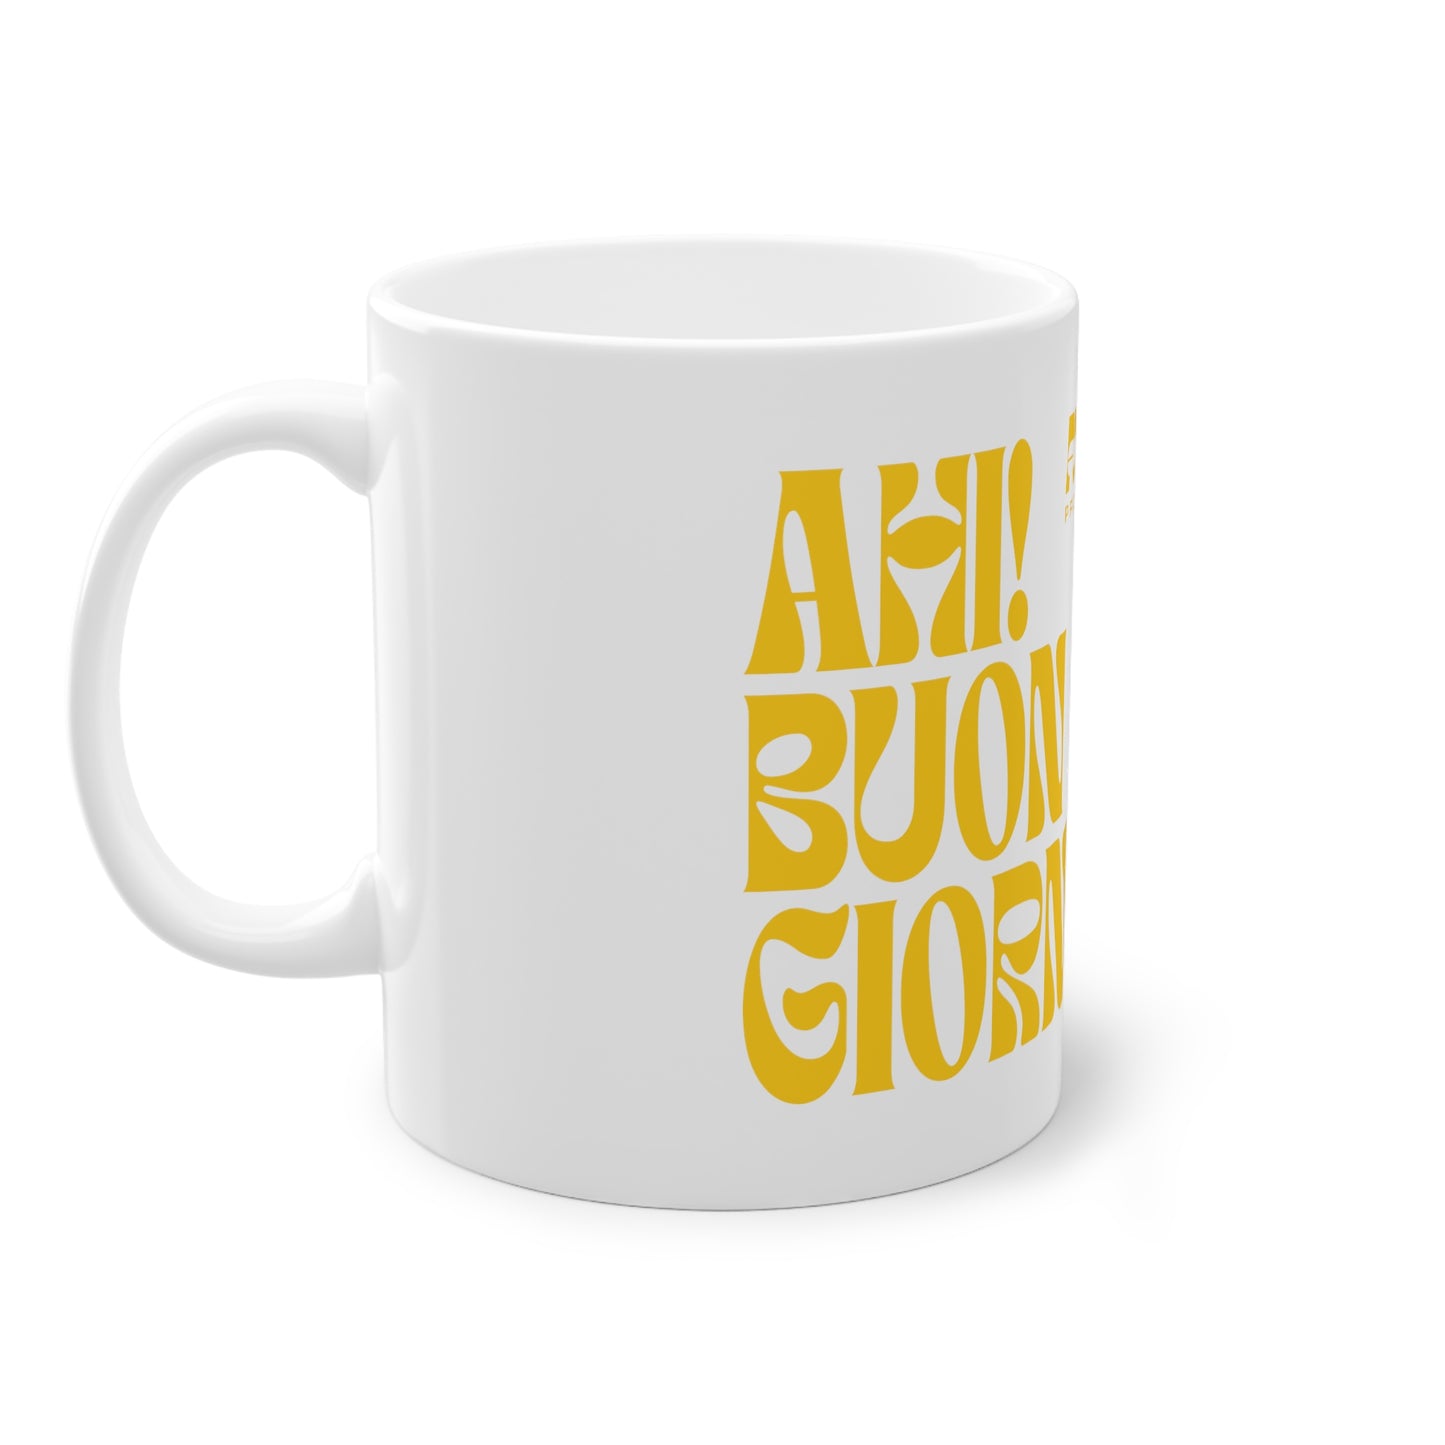 Foggy Project's "Ahi! Buongiorno" Ceramic Mug White